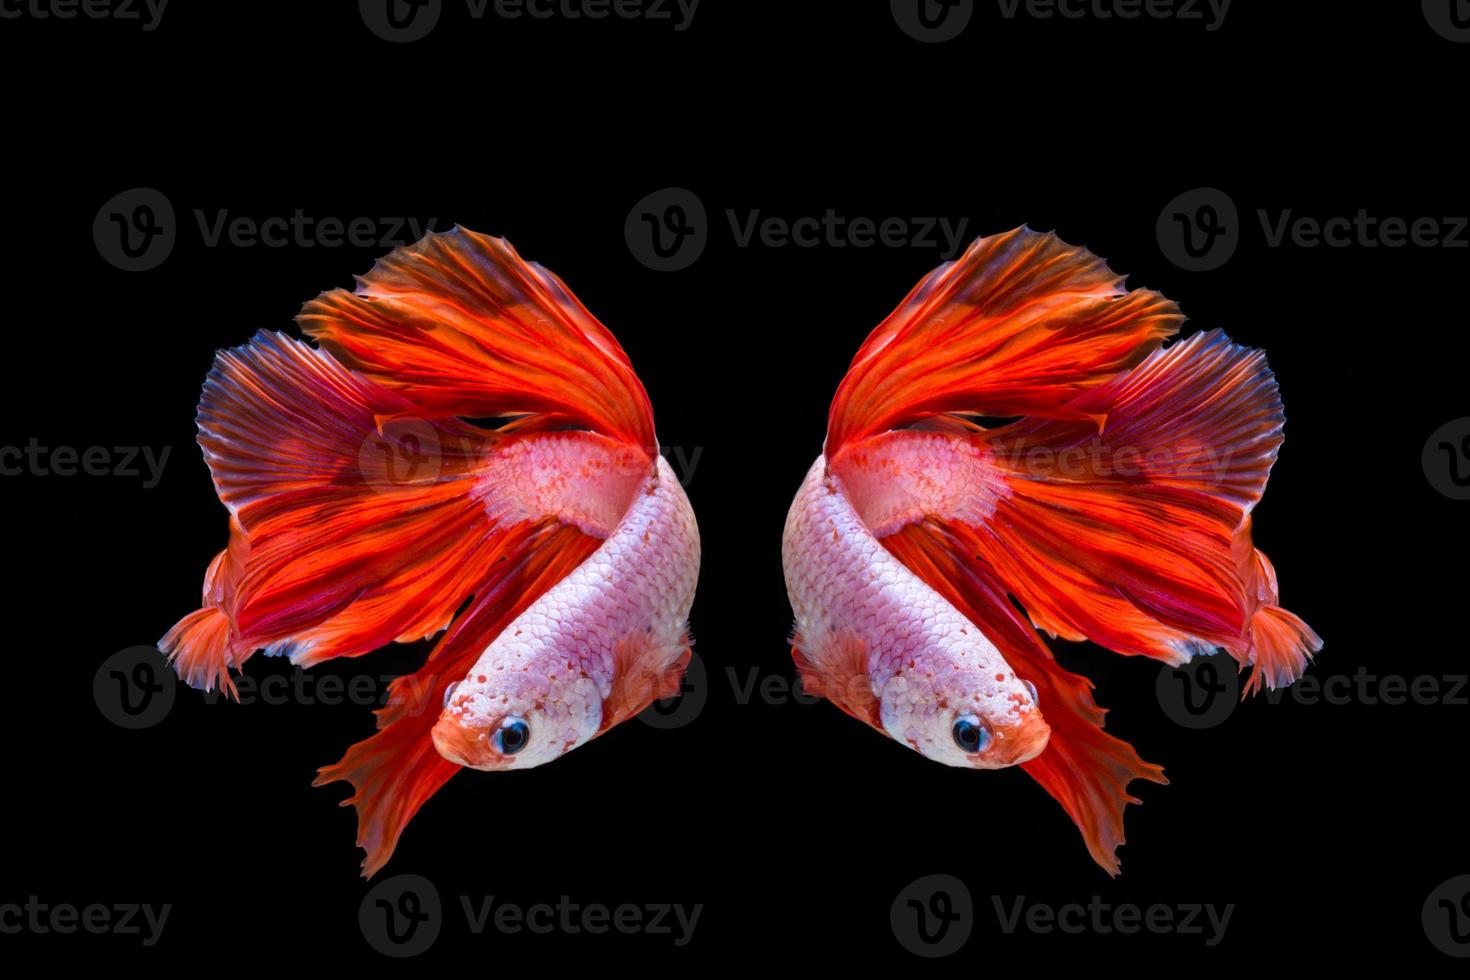 poisson betta rose et rouge, poisson de combat siamois sur fond noir photo